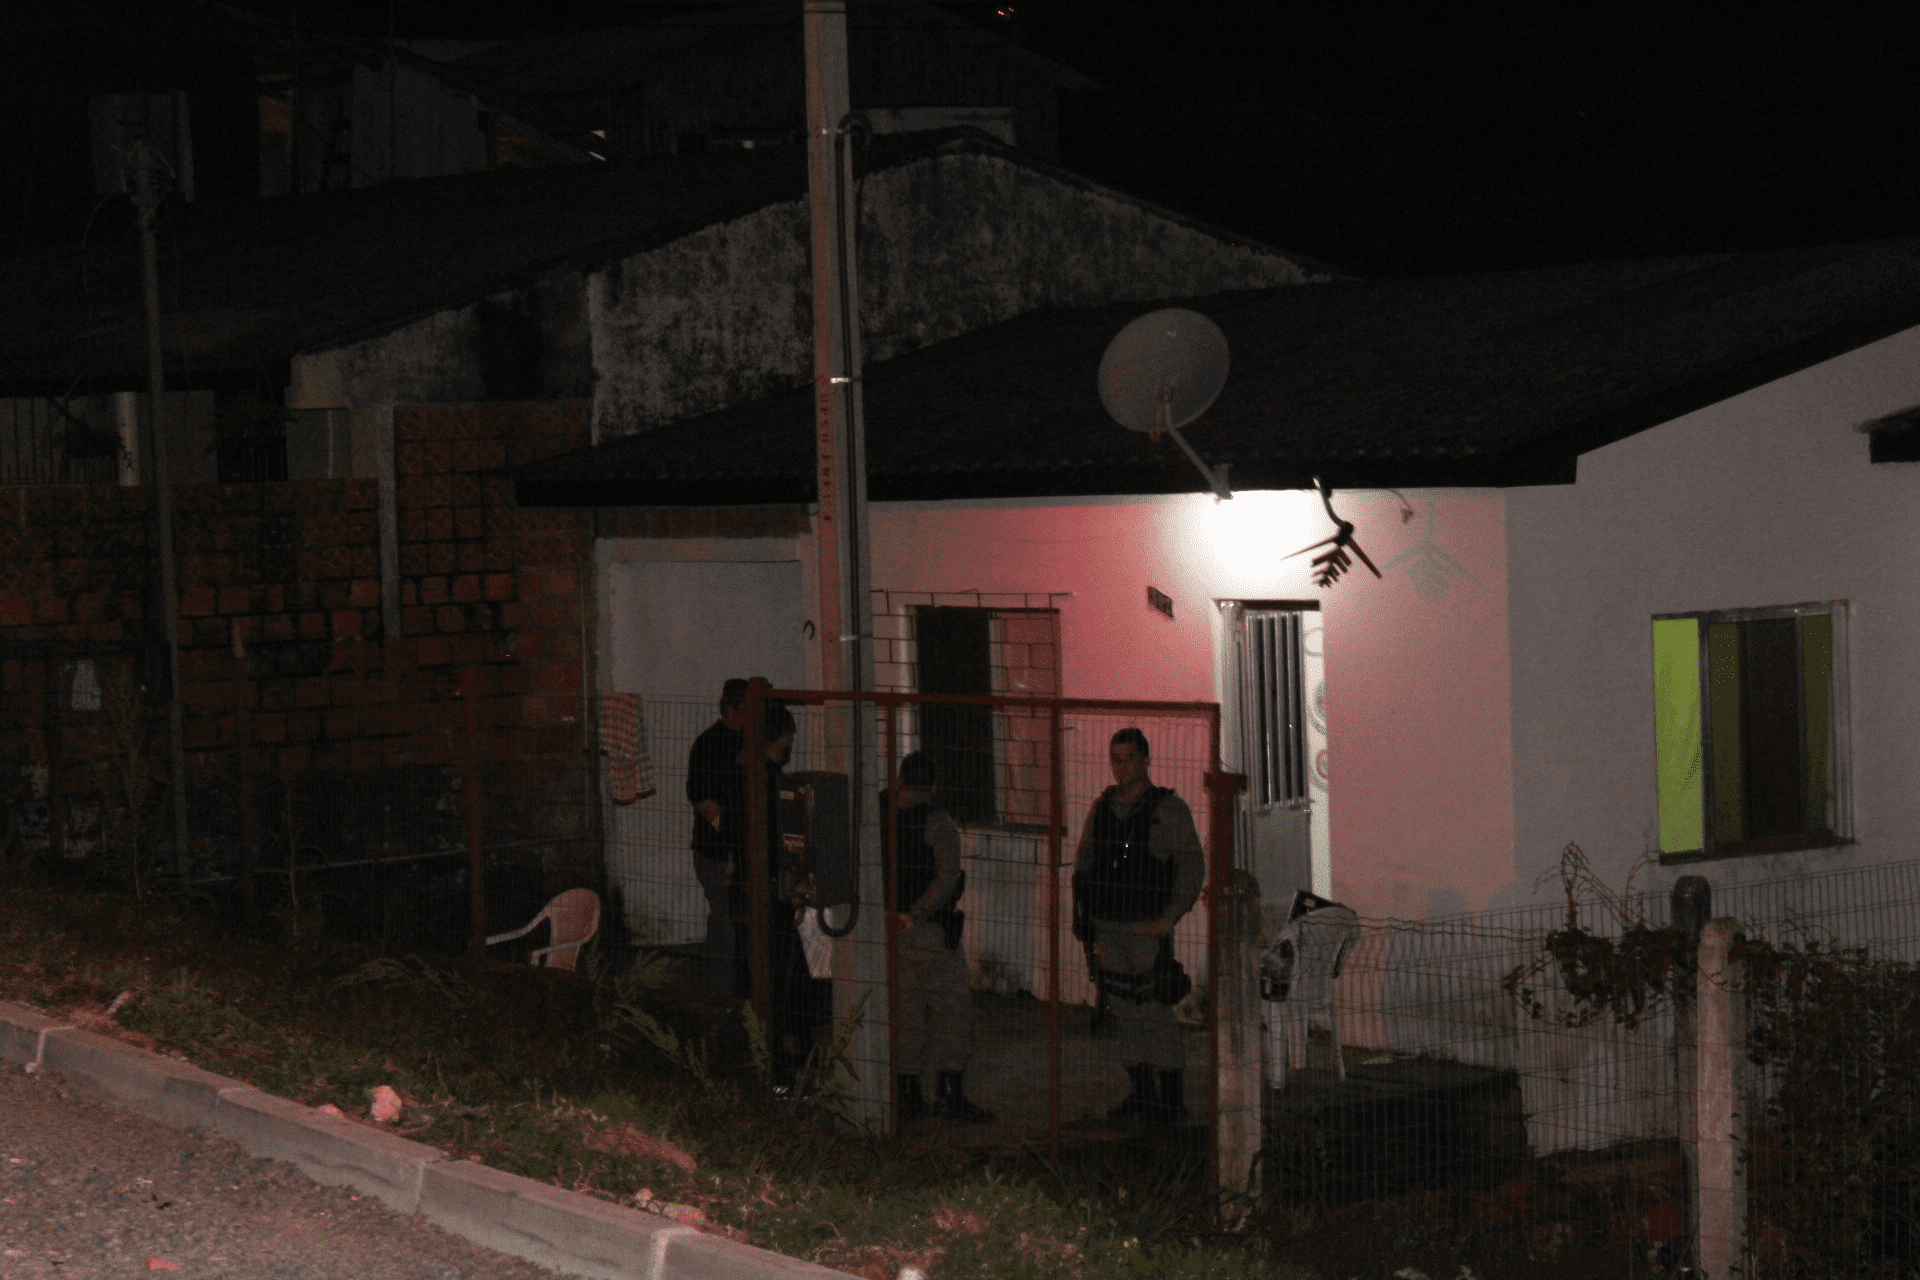 Polícia encontra drogas na casa aonde músico foi morto em Gravataí